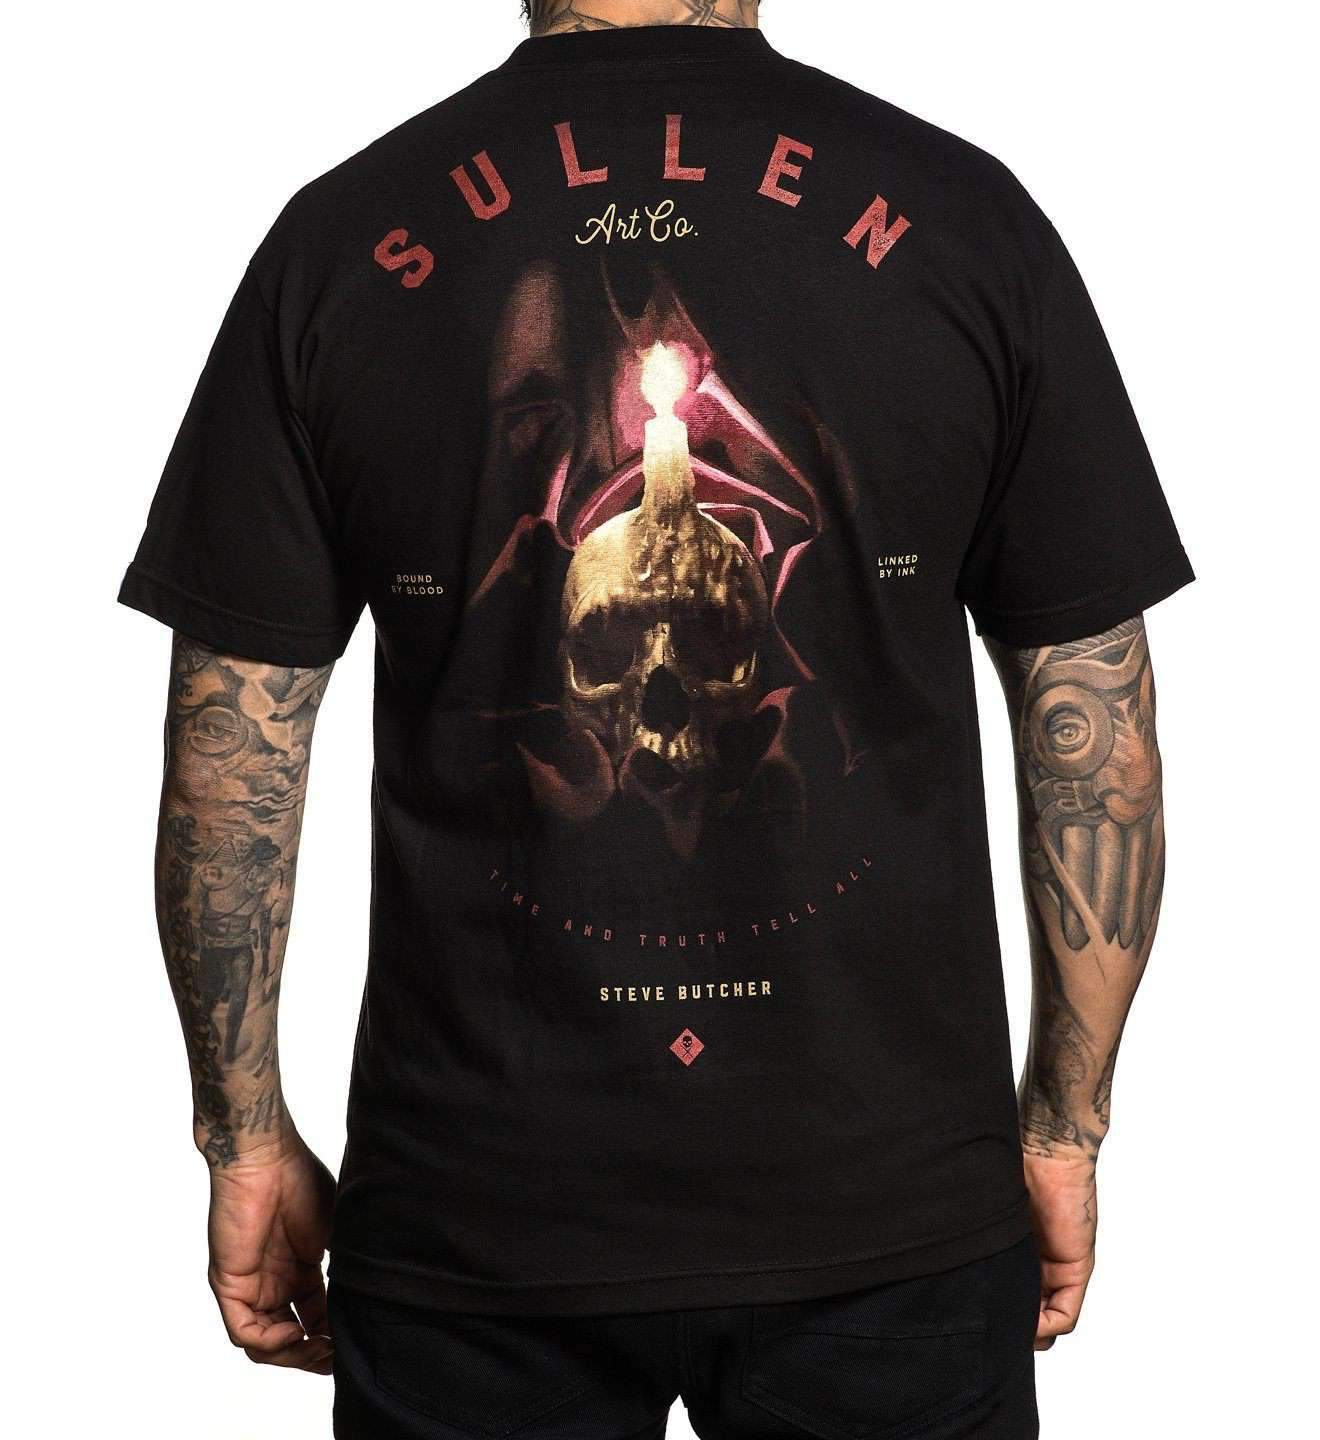 Steve Butcher T-Shirt by Sullen